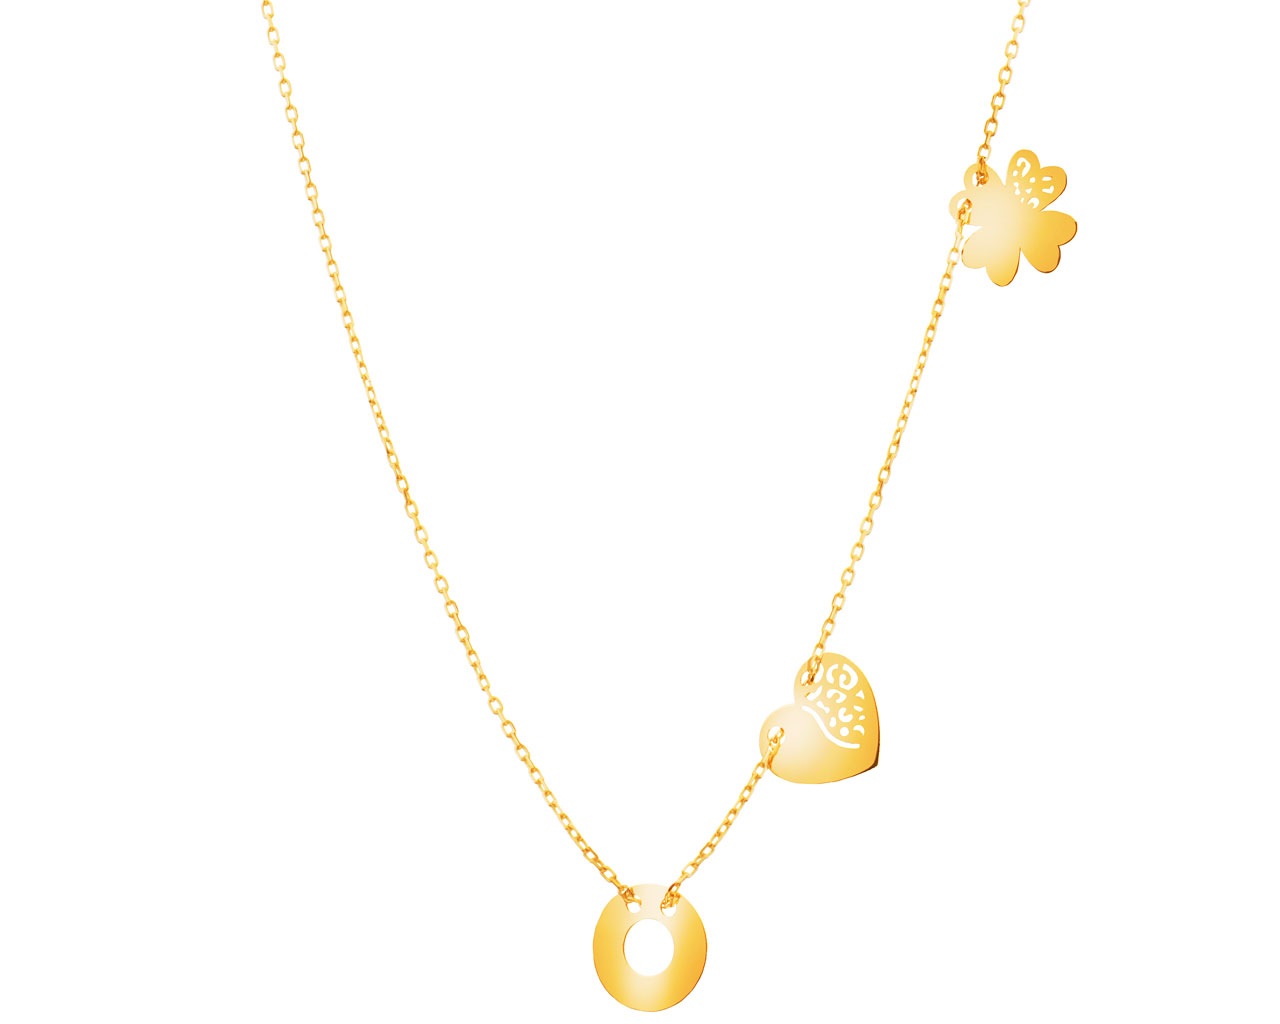 Zlatý náhrdelník - čtyřlístek, srdce, kroužek